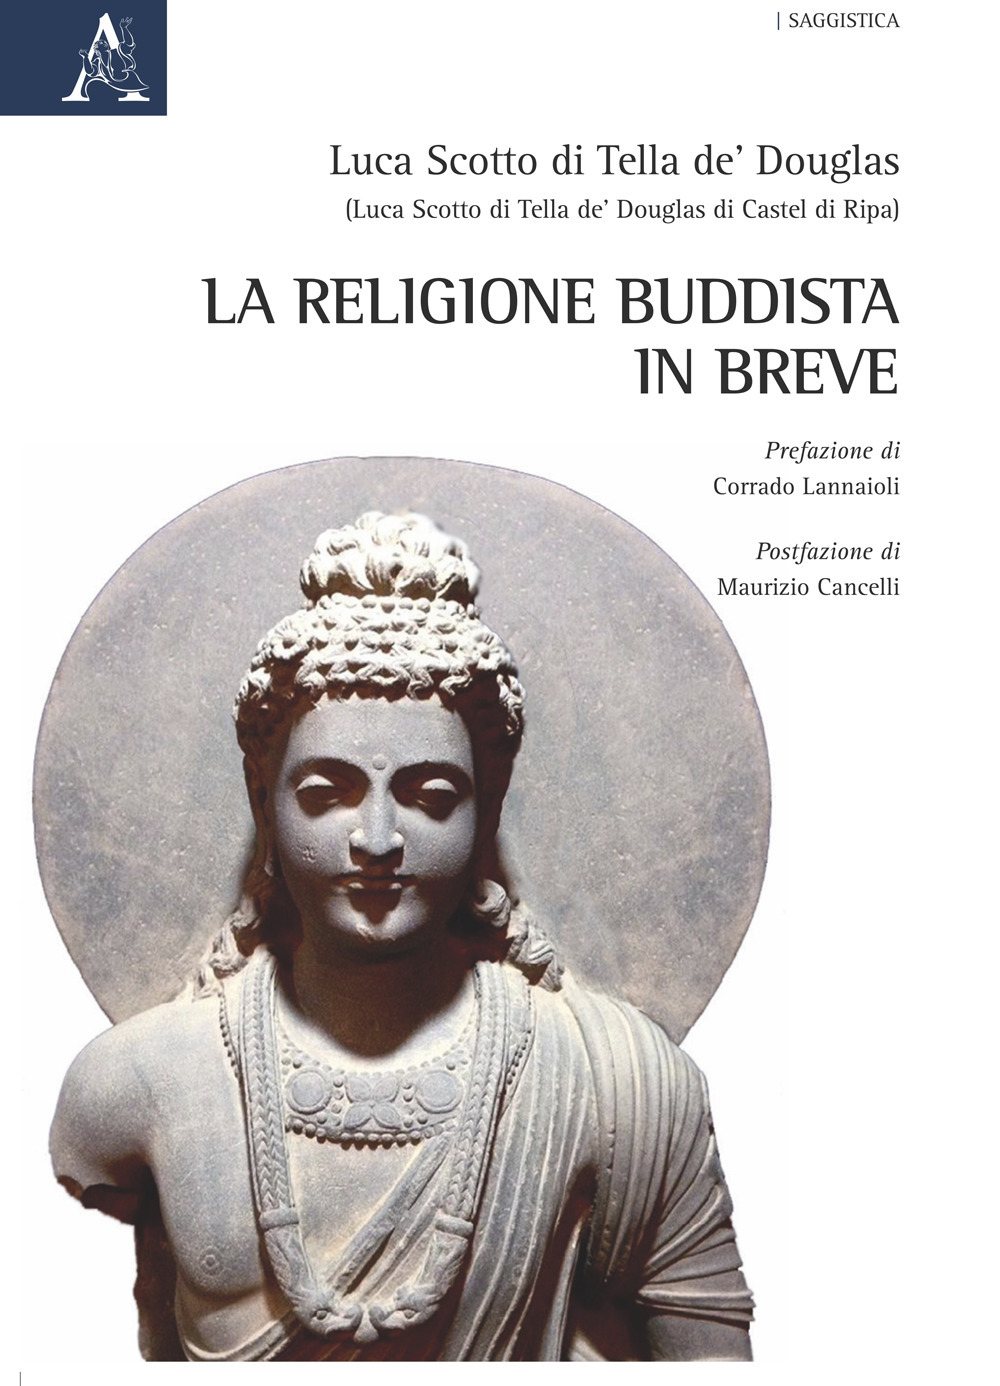 La religione Buddista in breve